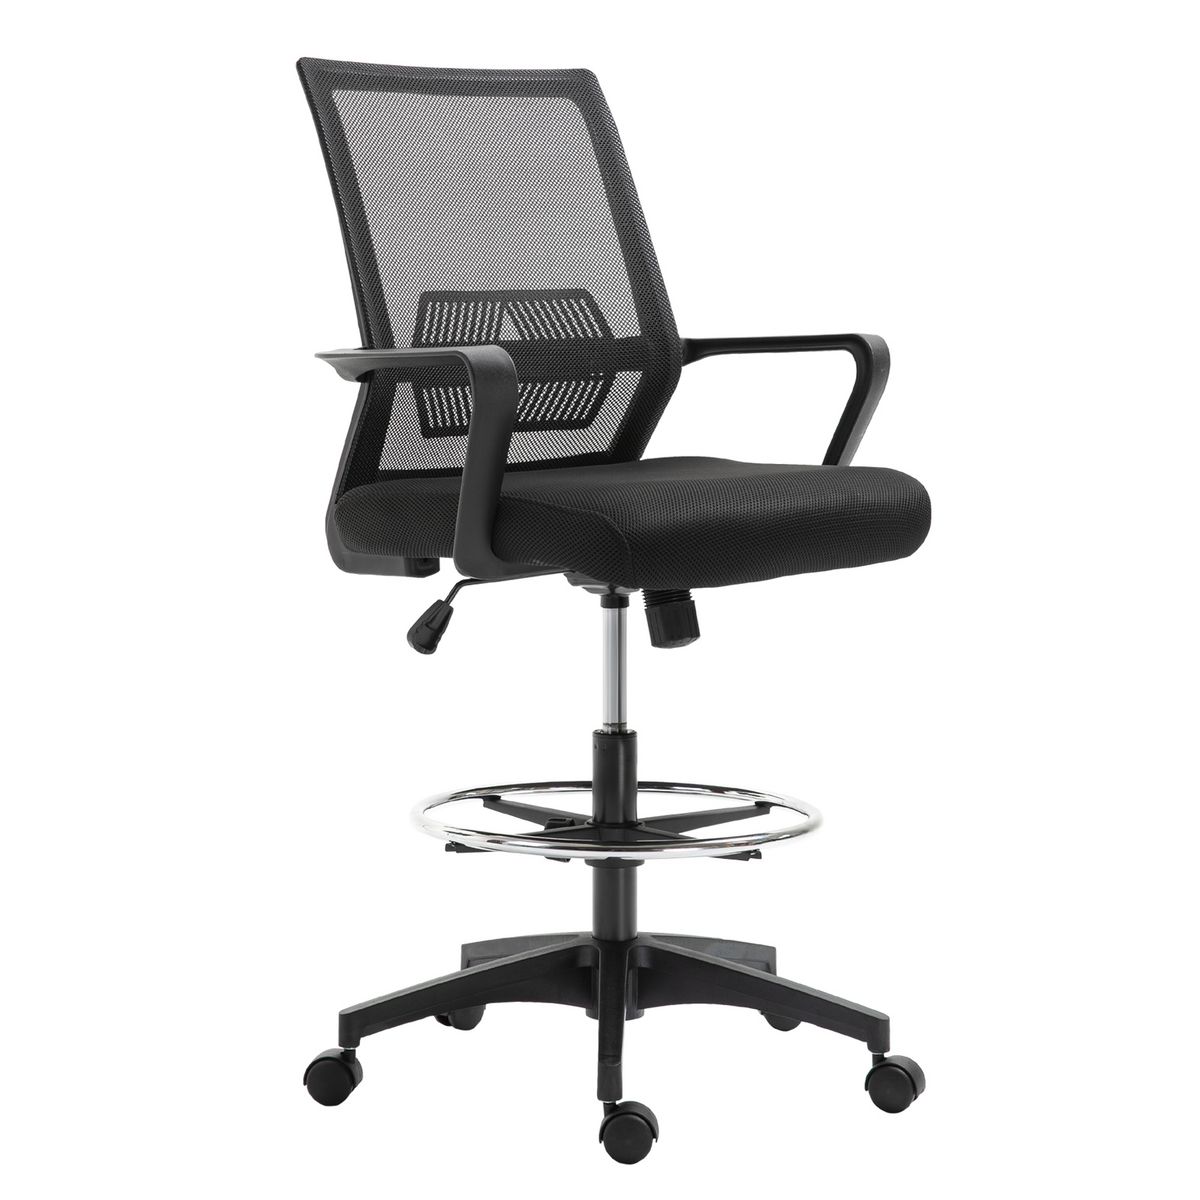 HOMCOM Fauteuil de bureau chaise de bureau assise haute réglable dim. 64L x 59l x 104-124H cm pivotant 360° maille respirante noir